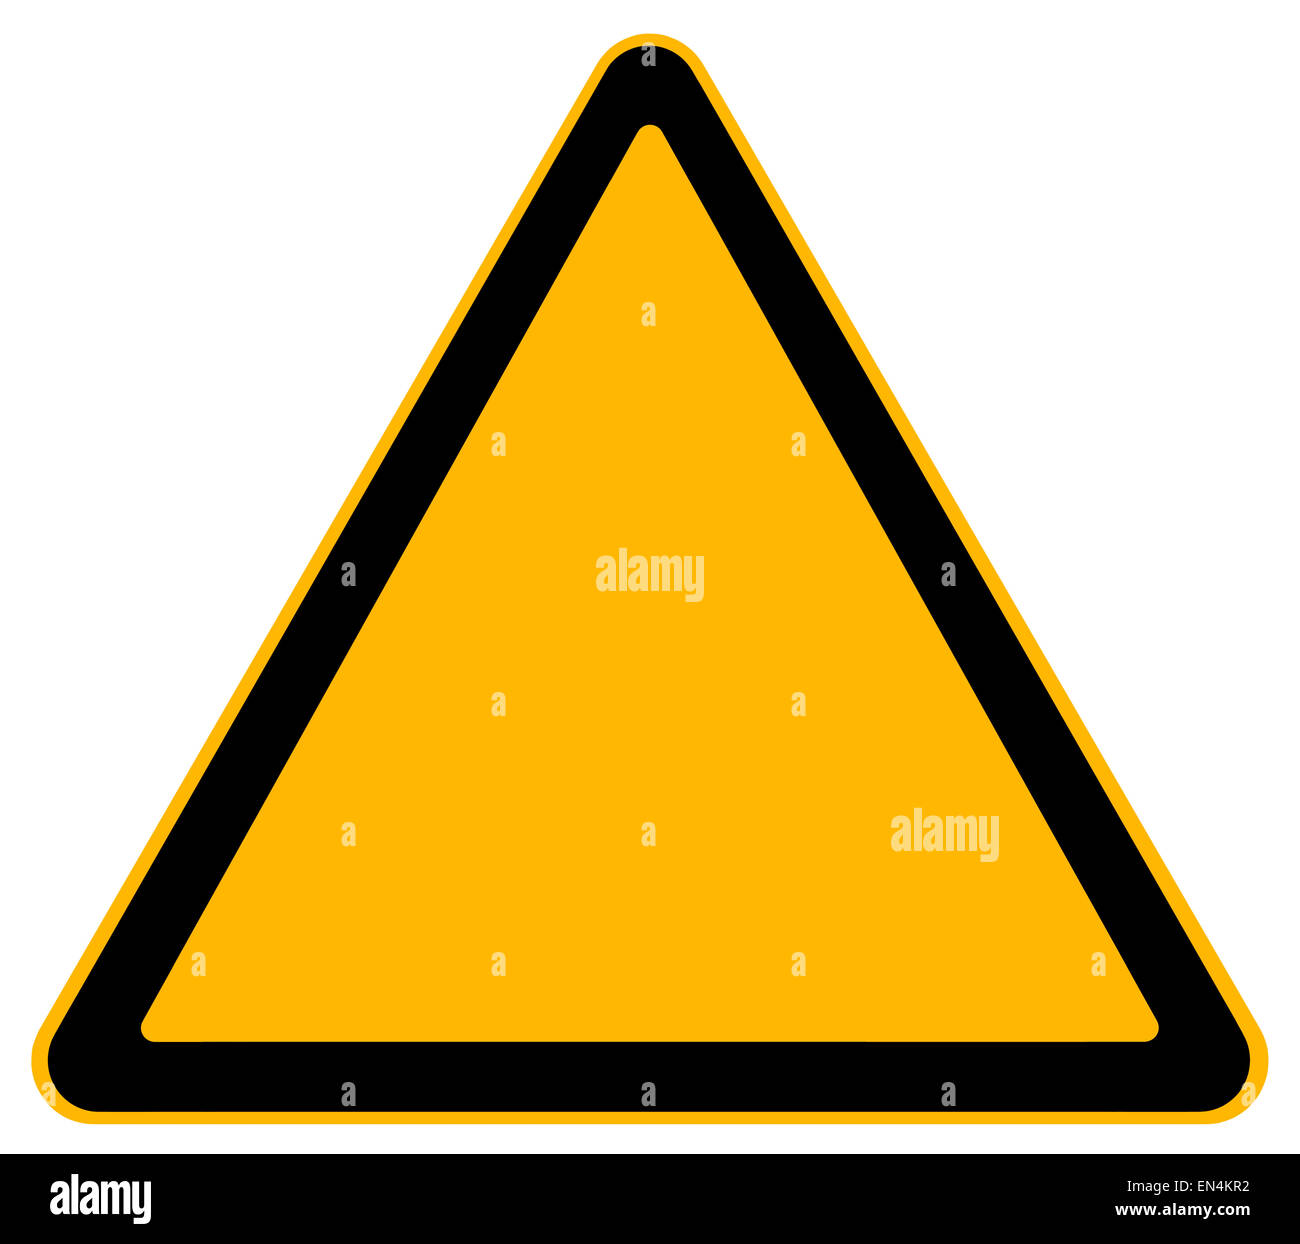 Blank Warning Sign Isolated on White Background. Stock Photo